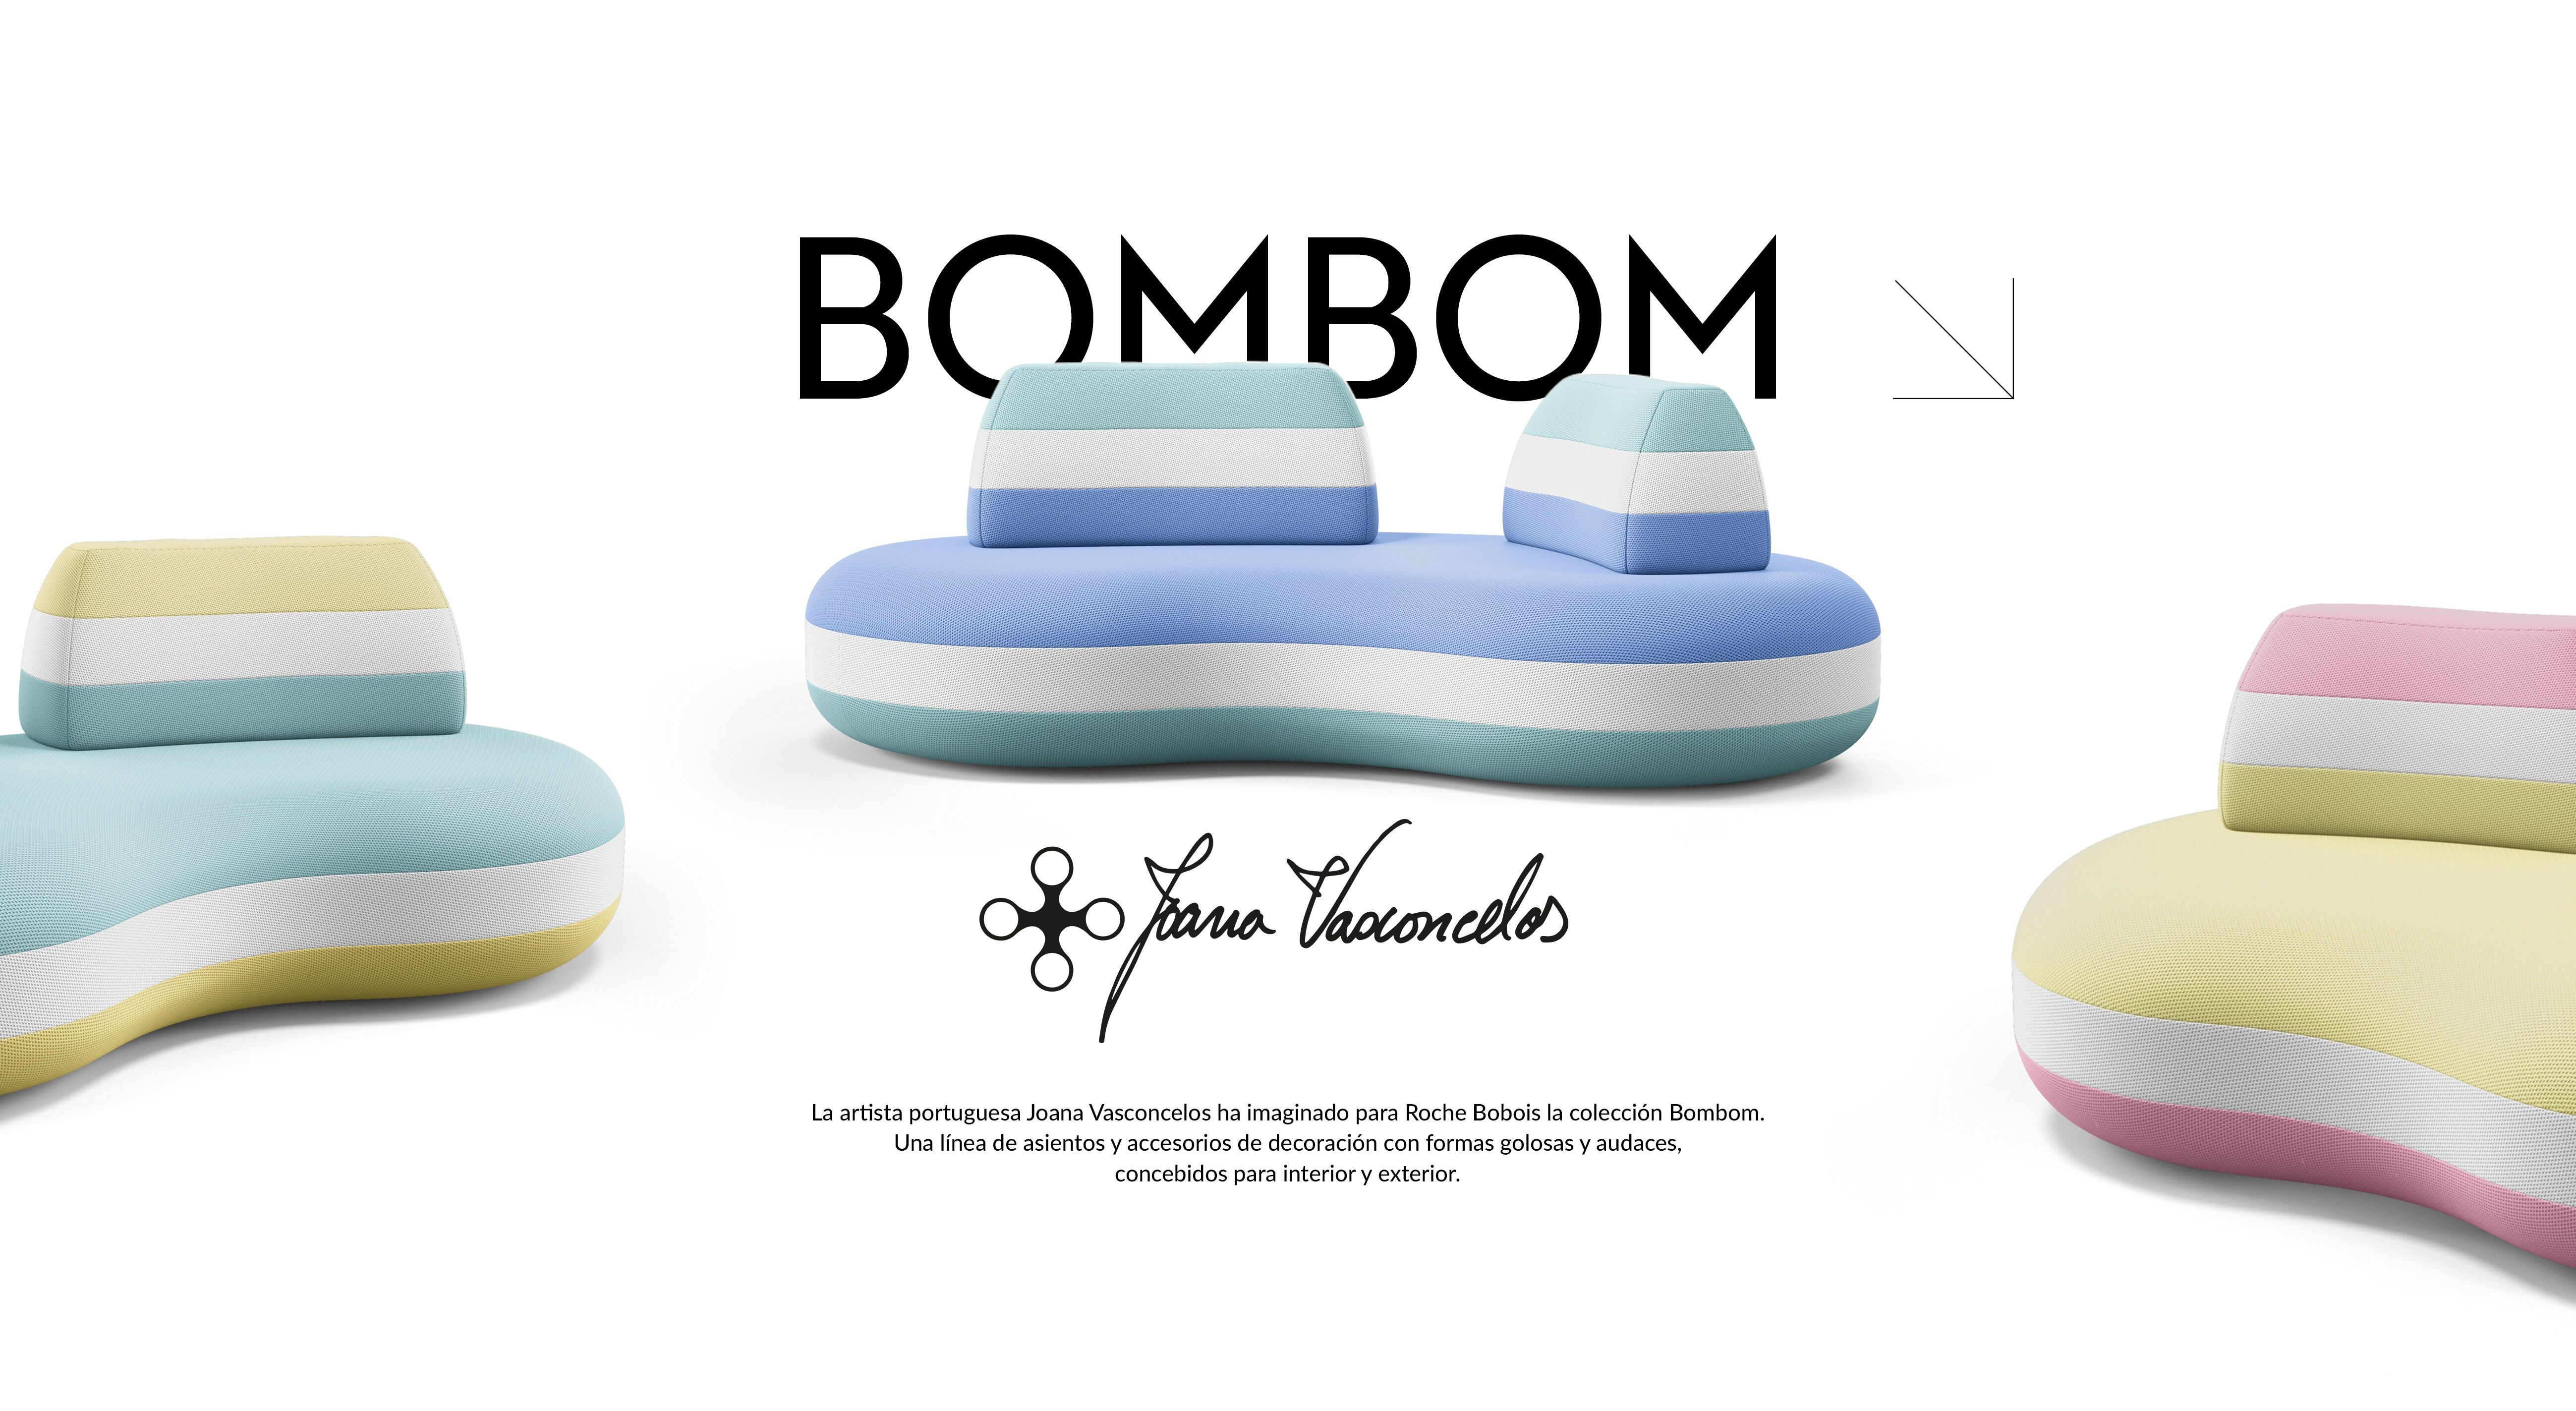 La artista portuguesa Joana Vasconcelos ha imaginado para Roche Bobois la colección Bombom. Una línea de asientos y accesorios de decoración con formas golosas y audaces, concebidos para interior y exterior. 